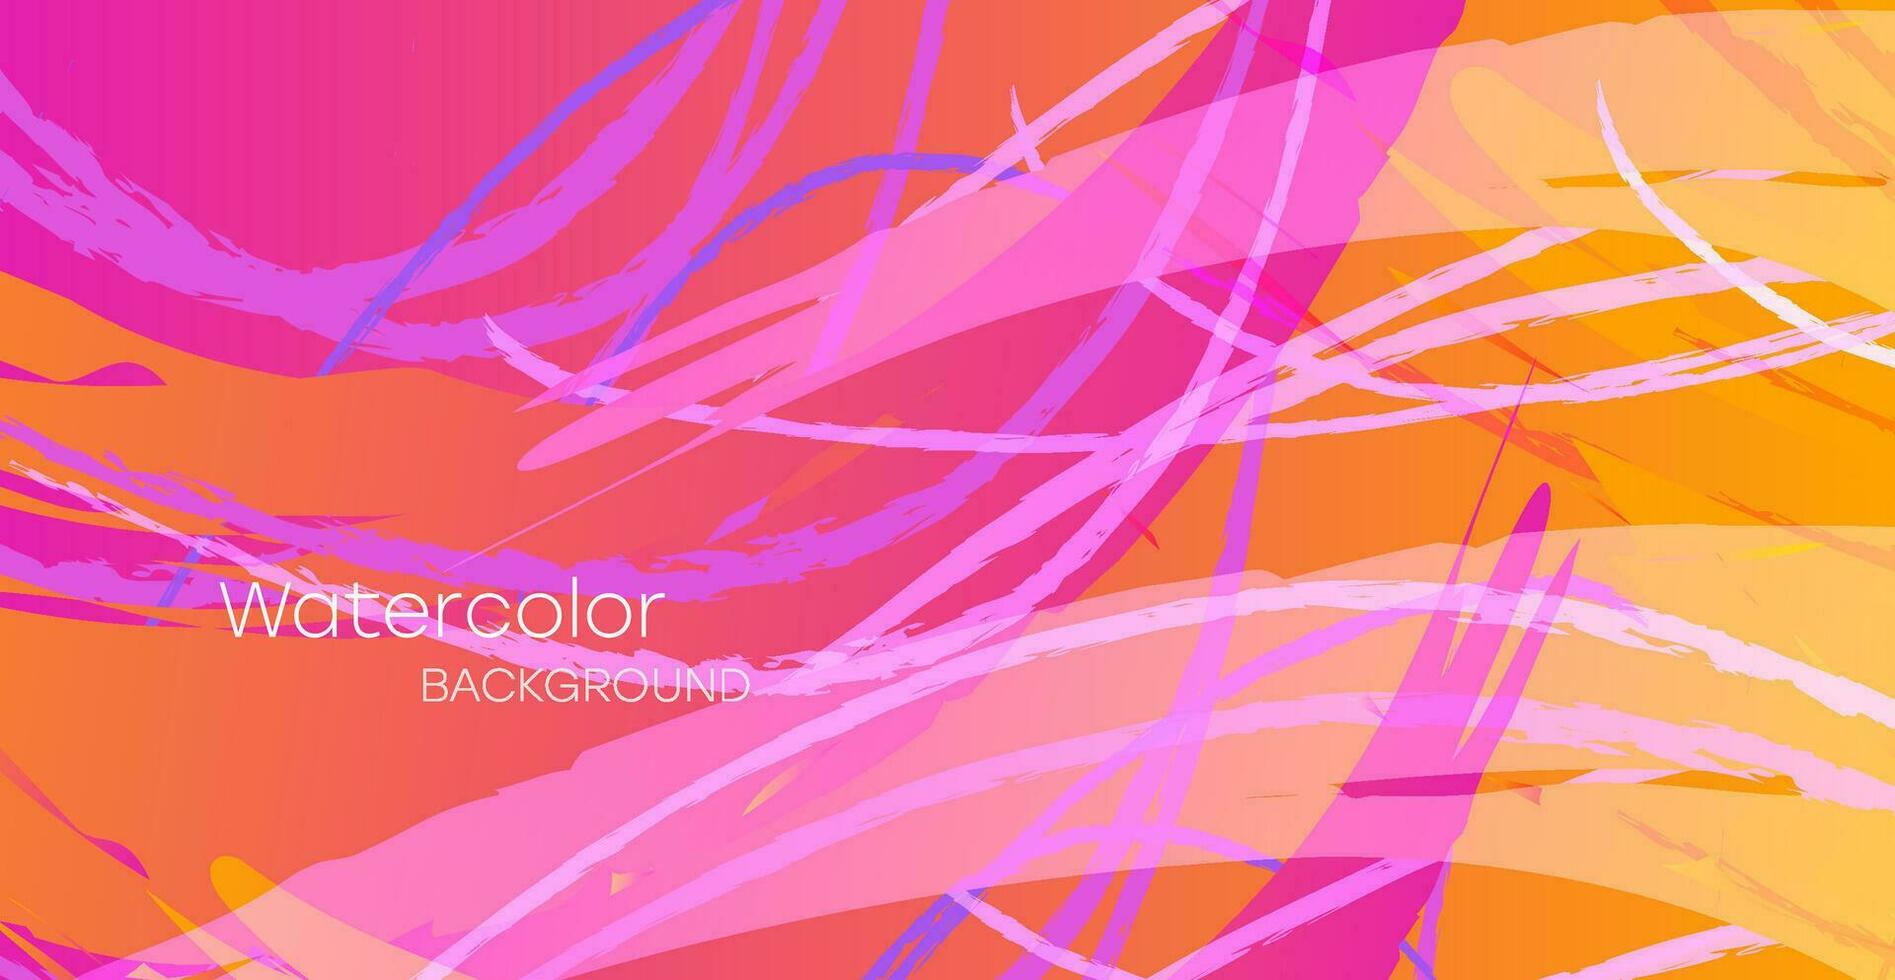 färgrik vattenfärg bakgrund för affisch, broschyr, kort eller flygblad. vektor